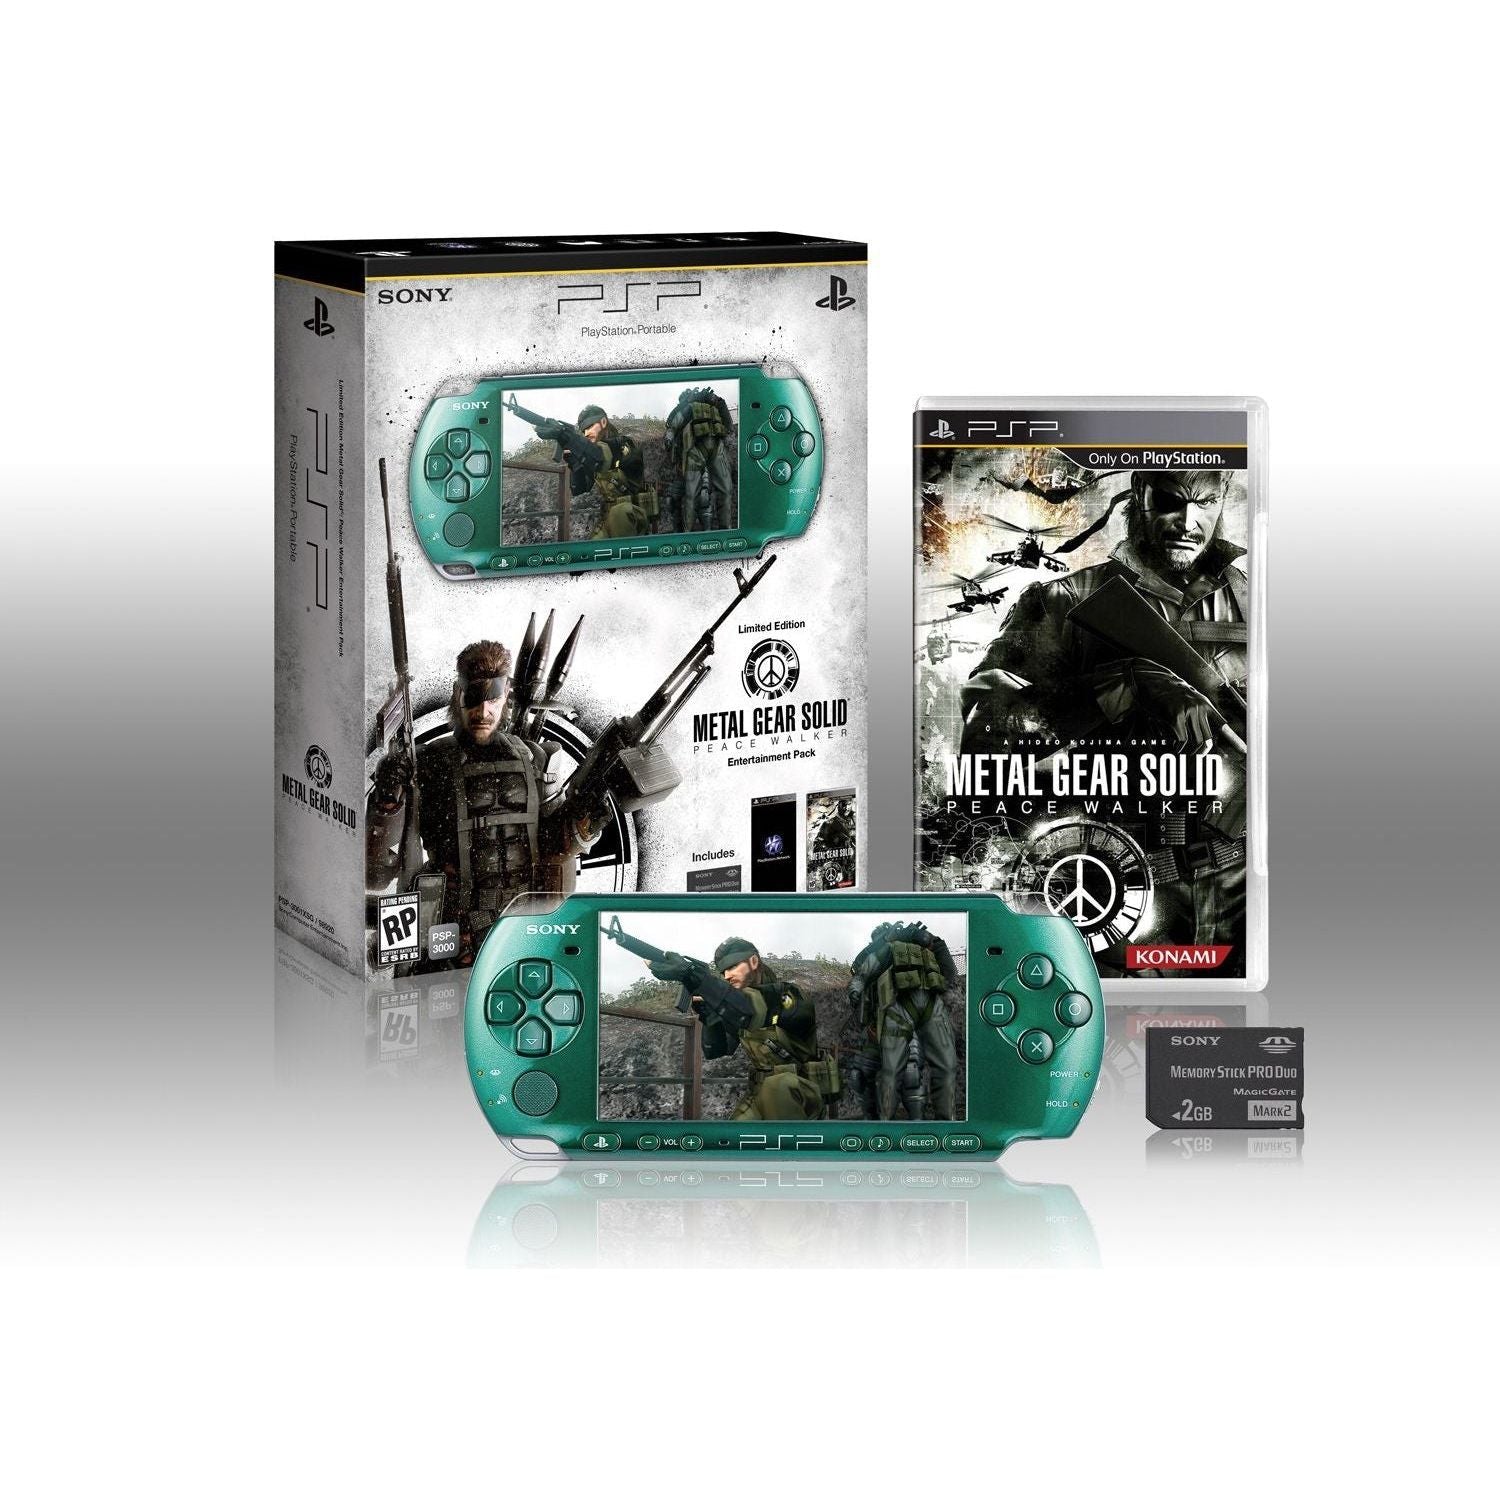 Pack de divertissement PlayStation Portable Metal Gear Solid Peace Walker en édition limitée